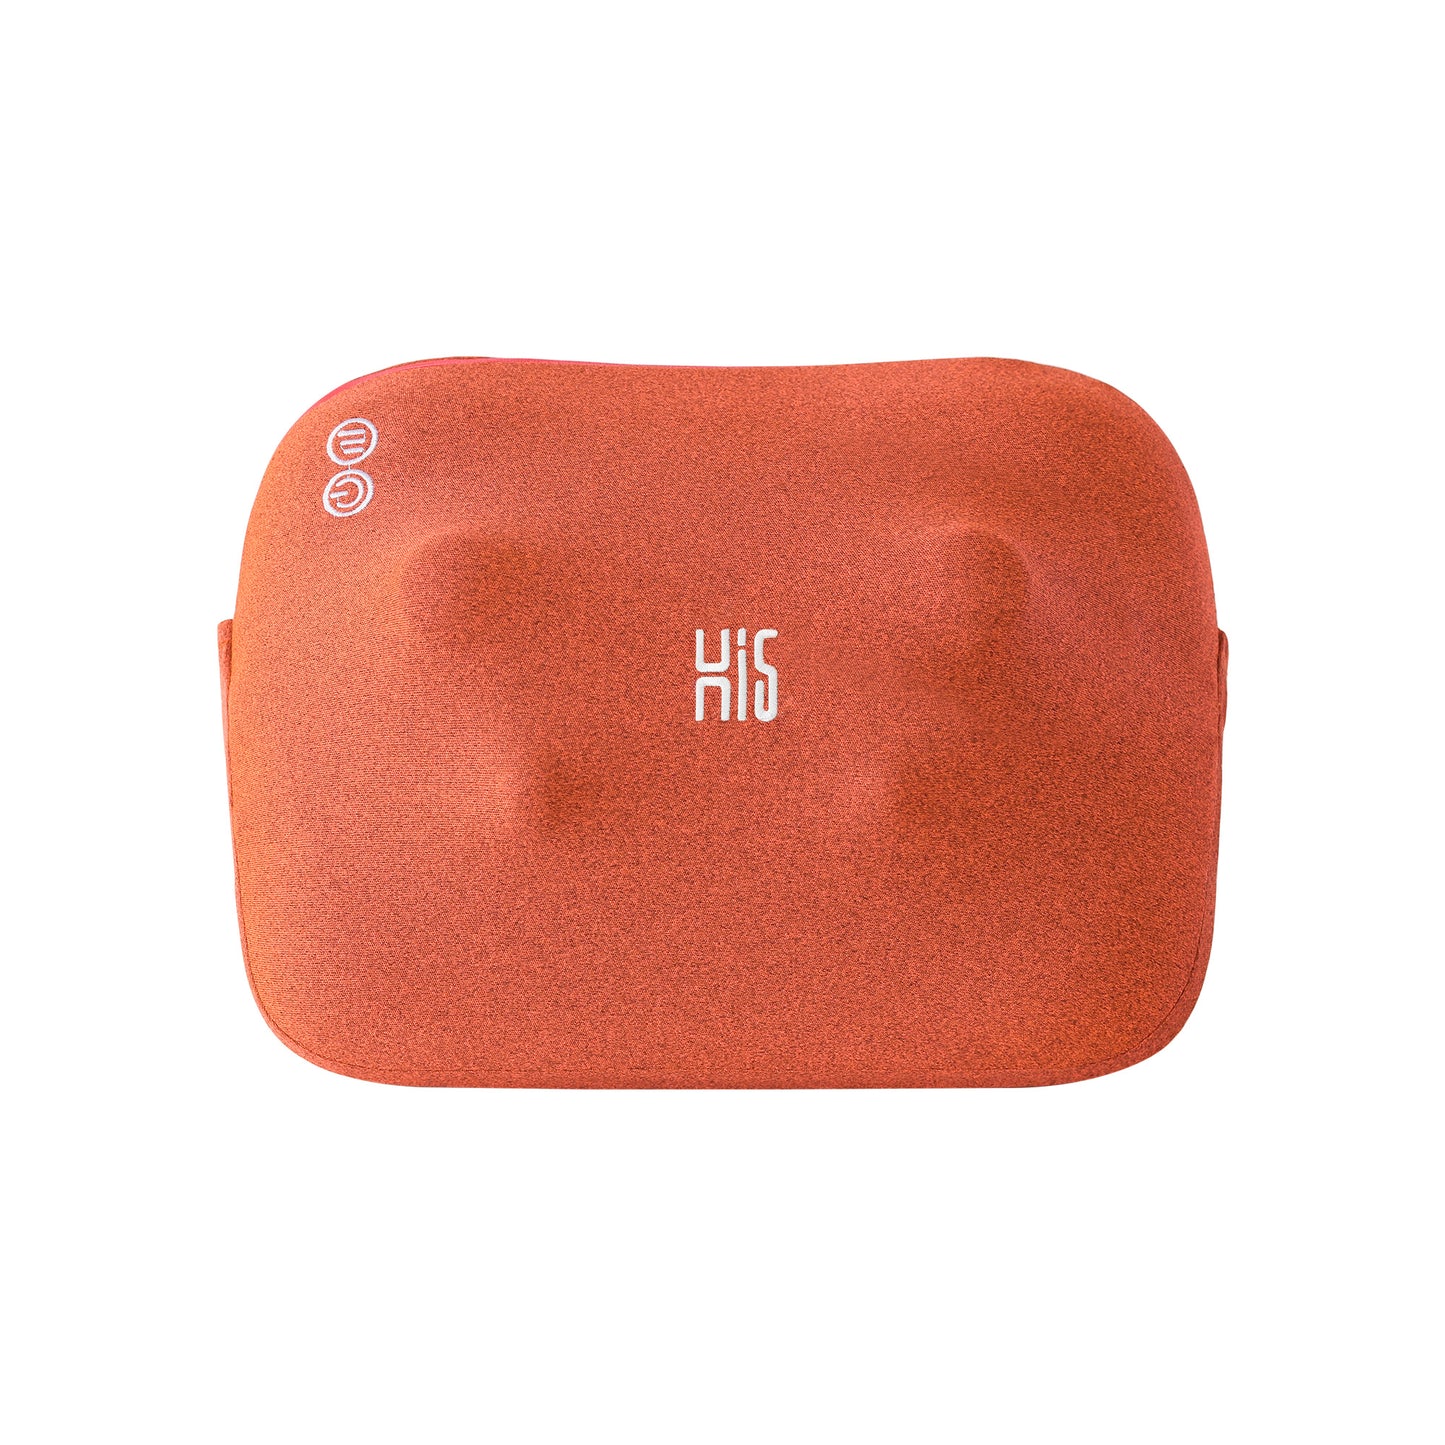 Hi5 Bravo mini shiatsu Coussin de massage avec fonction chauffante, 4 têtes de massage, arrêt automatique, housse lavable pour les épaules, le cou, le dos et les jambes